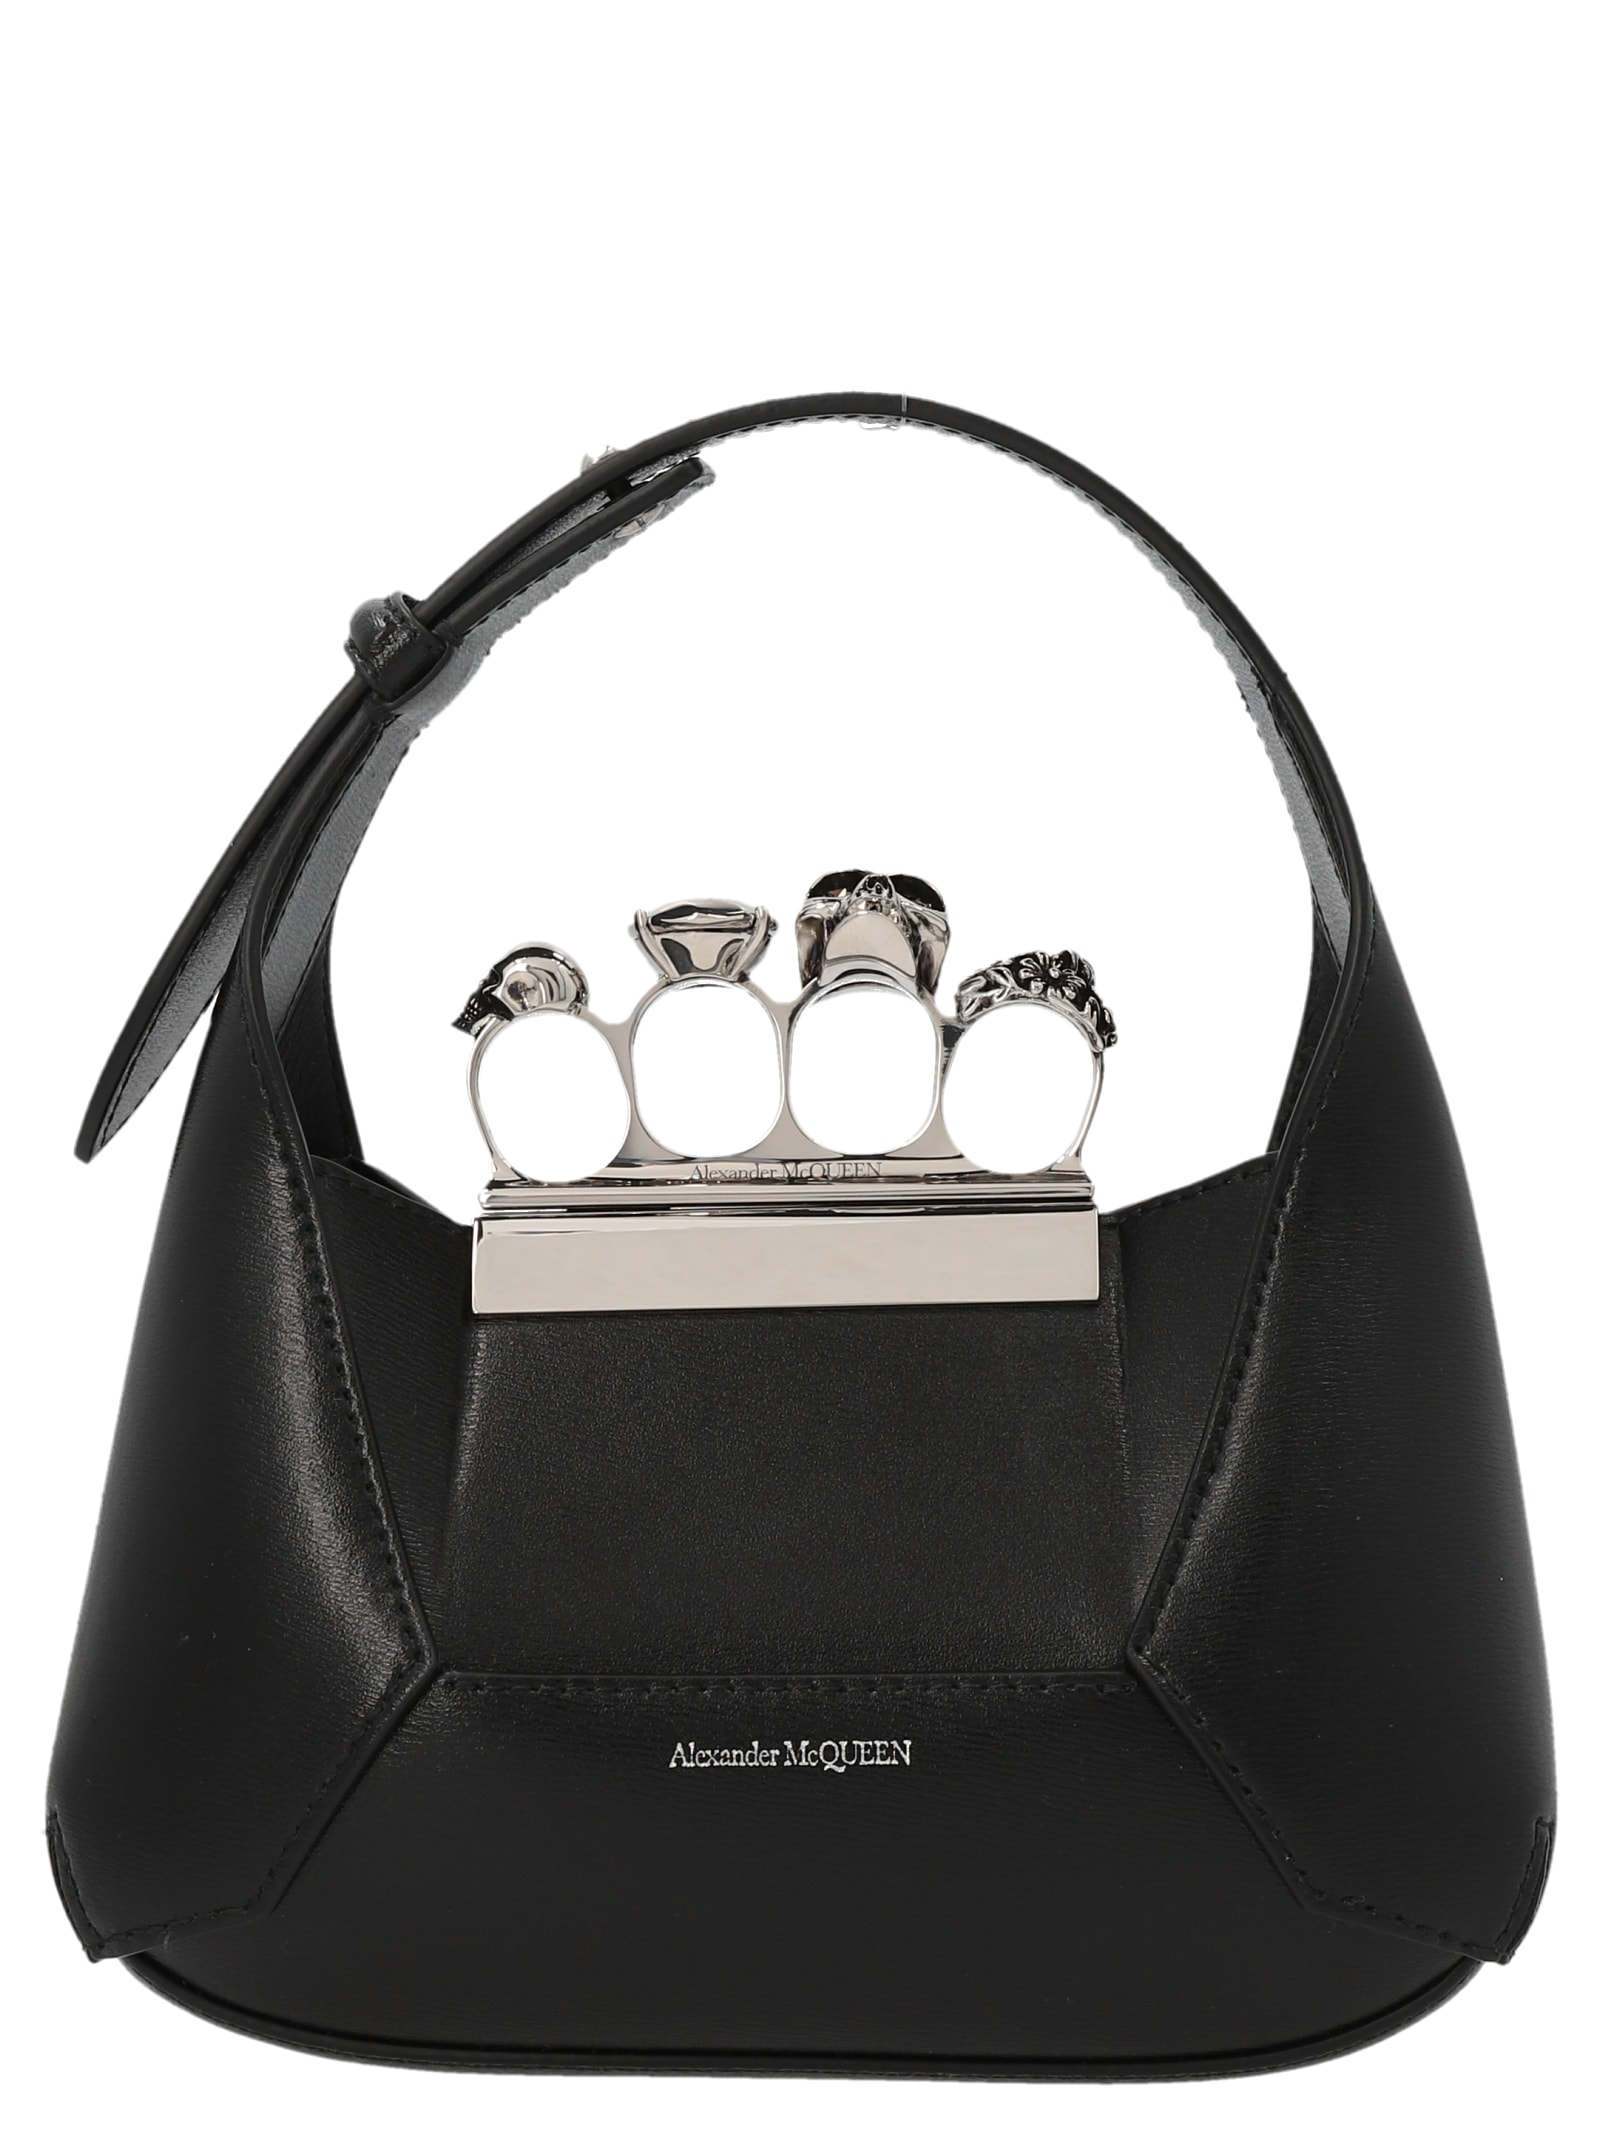 Alexander McQueen the Jewelled Hobo Mini Handbag